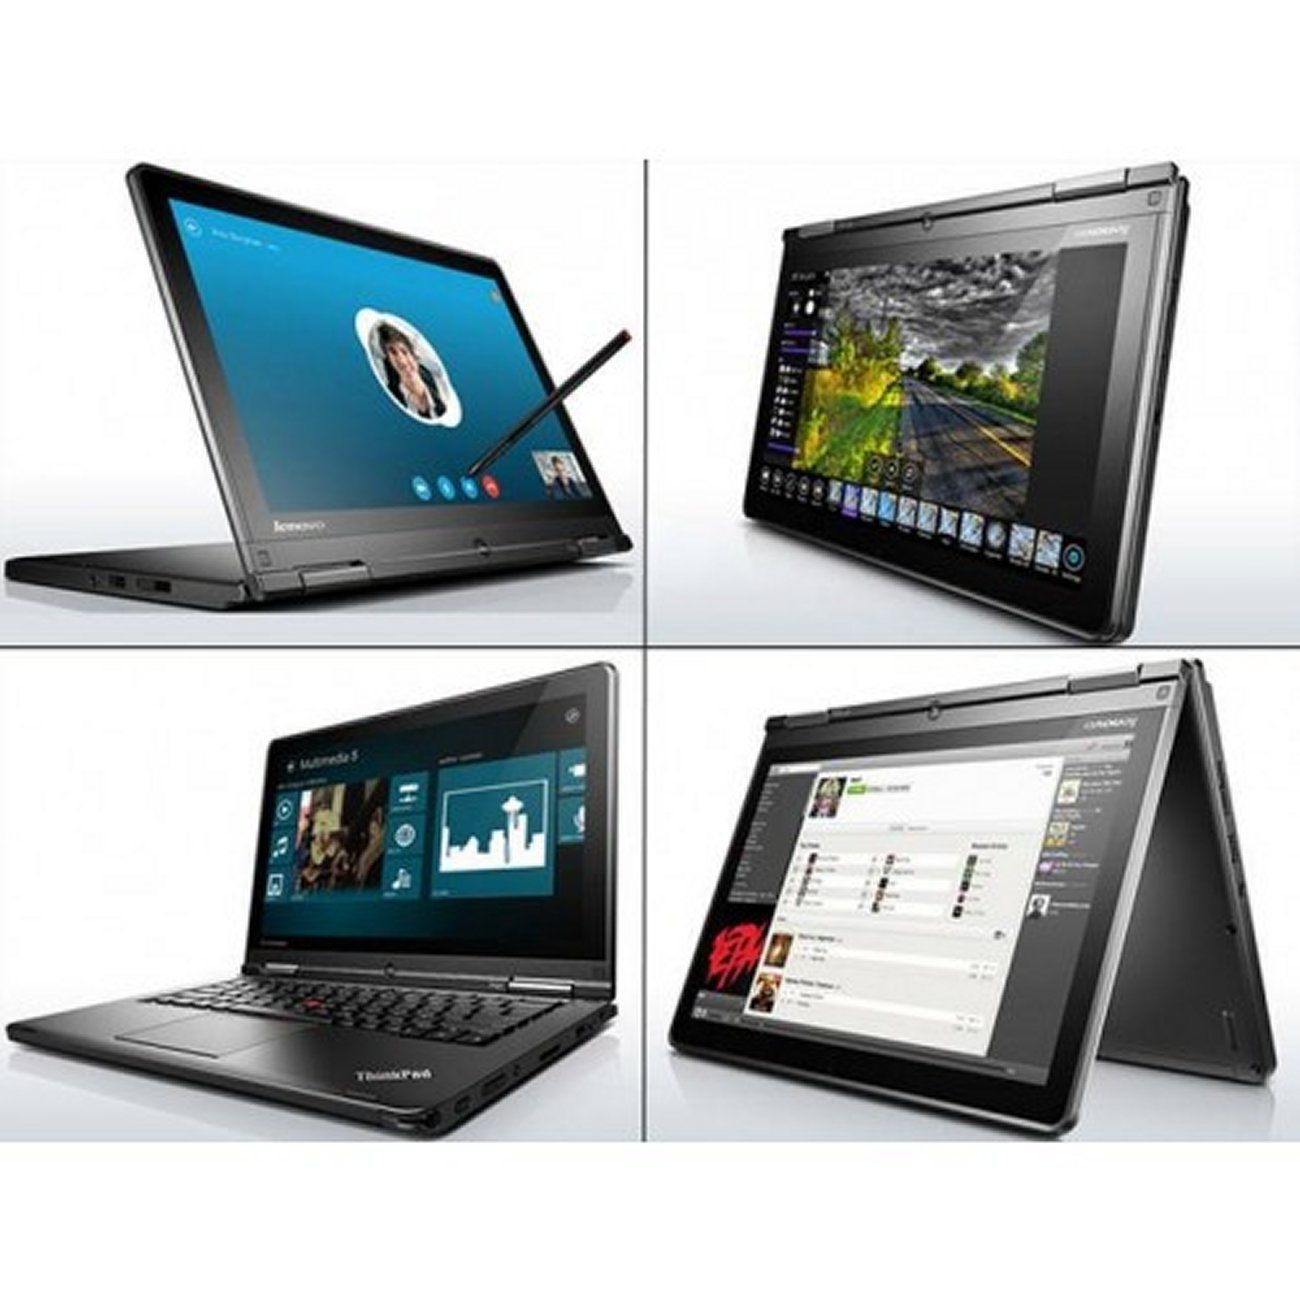 Lenovo ThinkPad Yoga 12 2.3GHz i5-5300U 4gb 256gb ssd 12.5